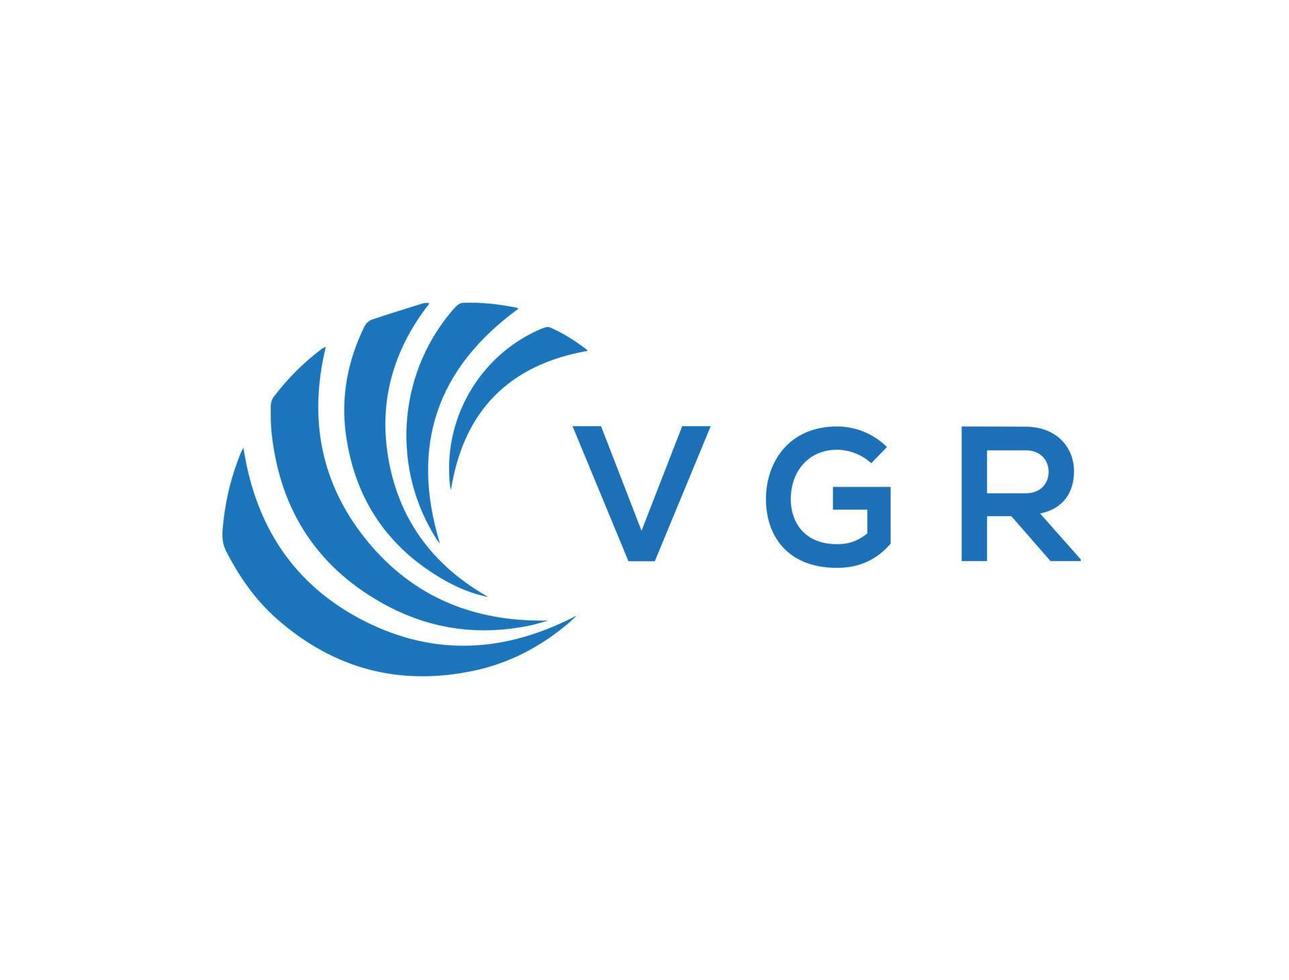 VGR letter logo design on white background. VGR creative circle letter logo concept. VGR letter design. vector